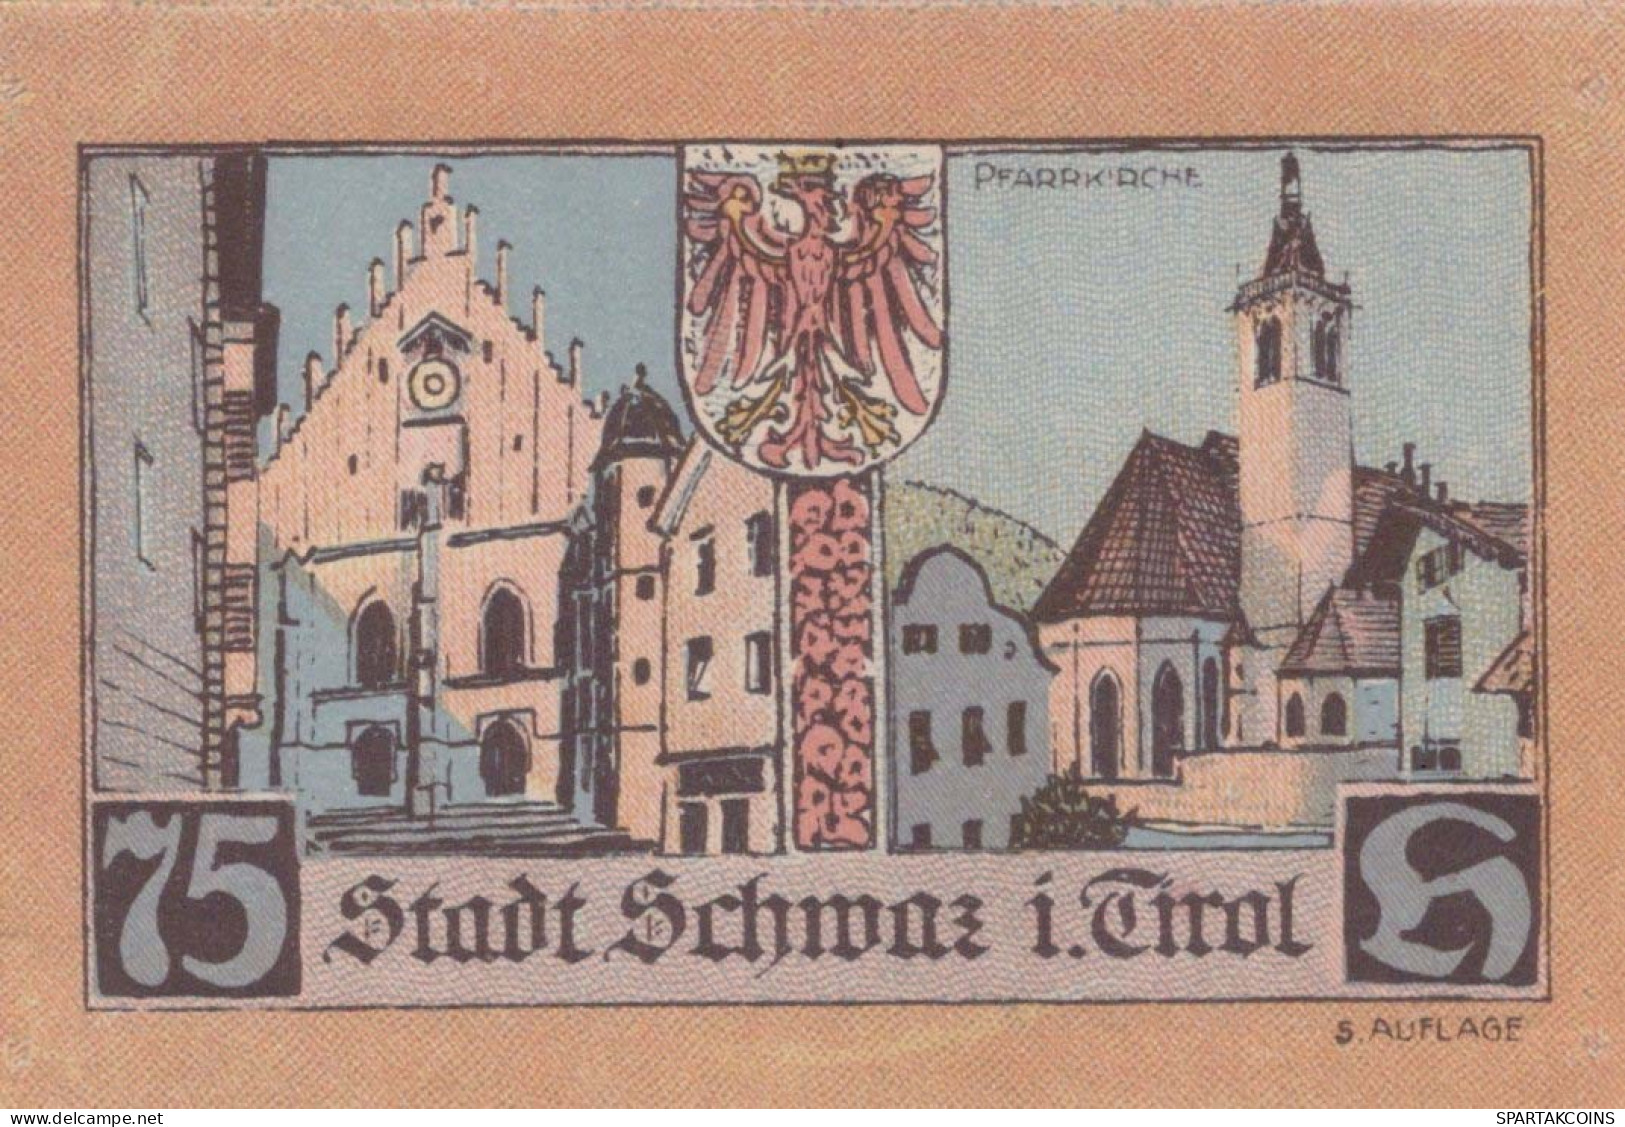 75 HELLER 1921 Stadt SCHWAZ Tyrol UNC Österreich Notgeld Banknote #PH039 - Lokale Ausgaben